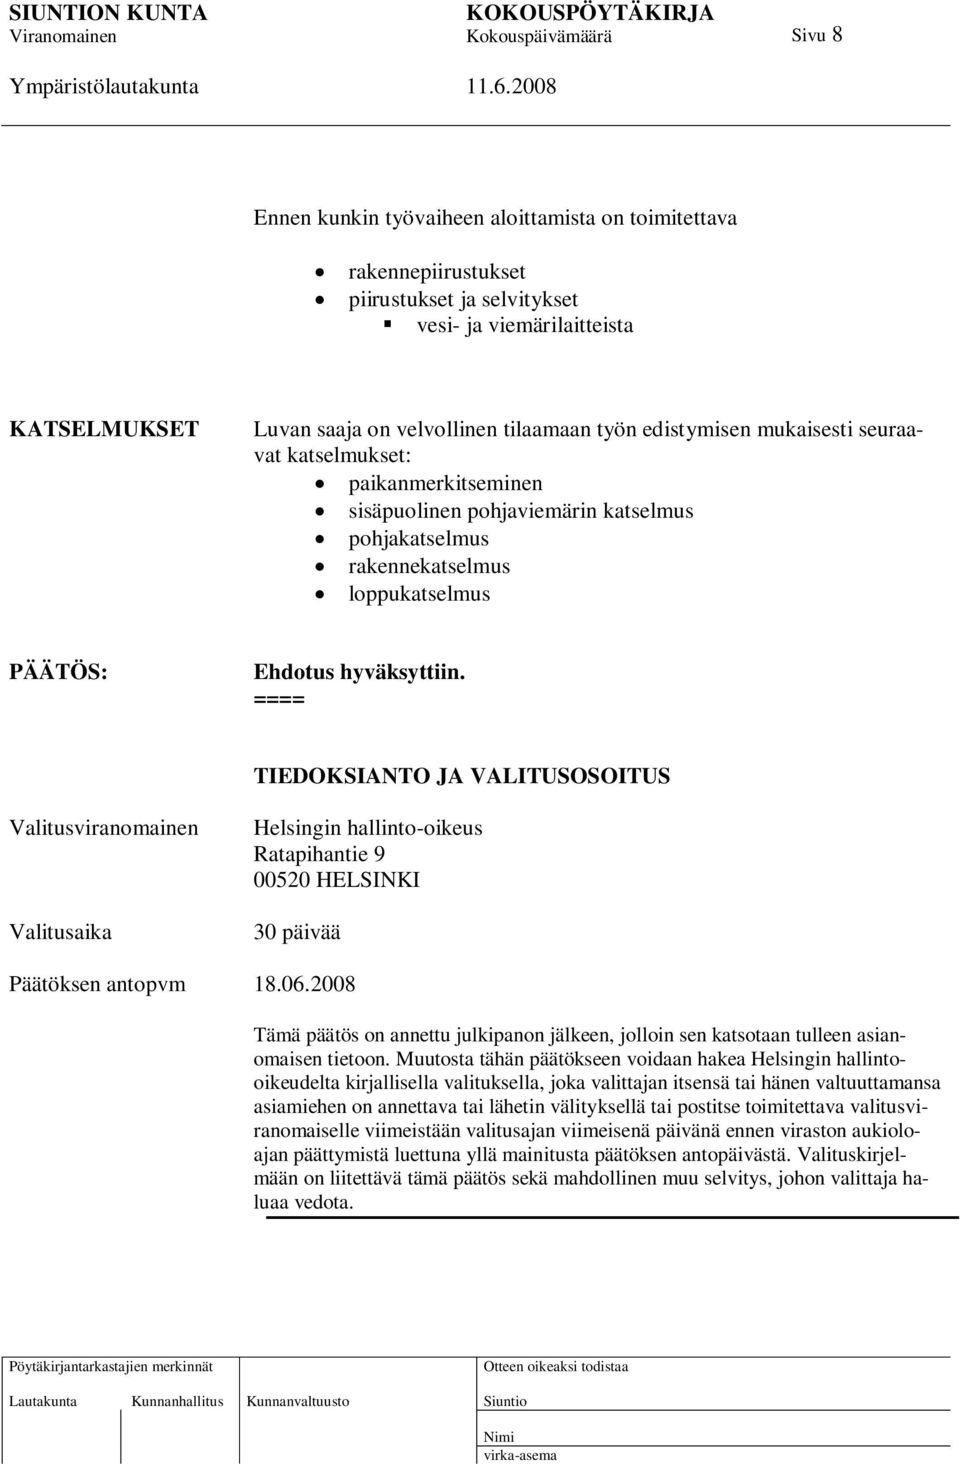 ==== TIEDOKSIANTO JA VALITUSOSOITUS Valitusviranomainen Valitusaika Helsingin hallinto-oikeus Ratapihantie 9 00520 HELSINKI 30 päivää Päätöksen antopvm 18.06.